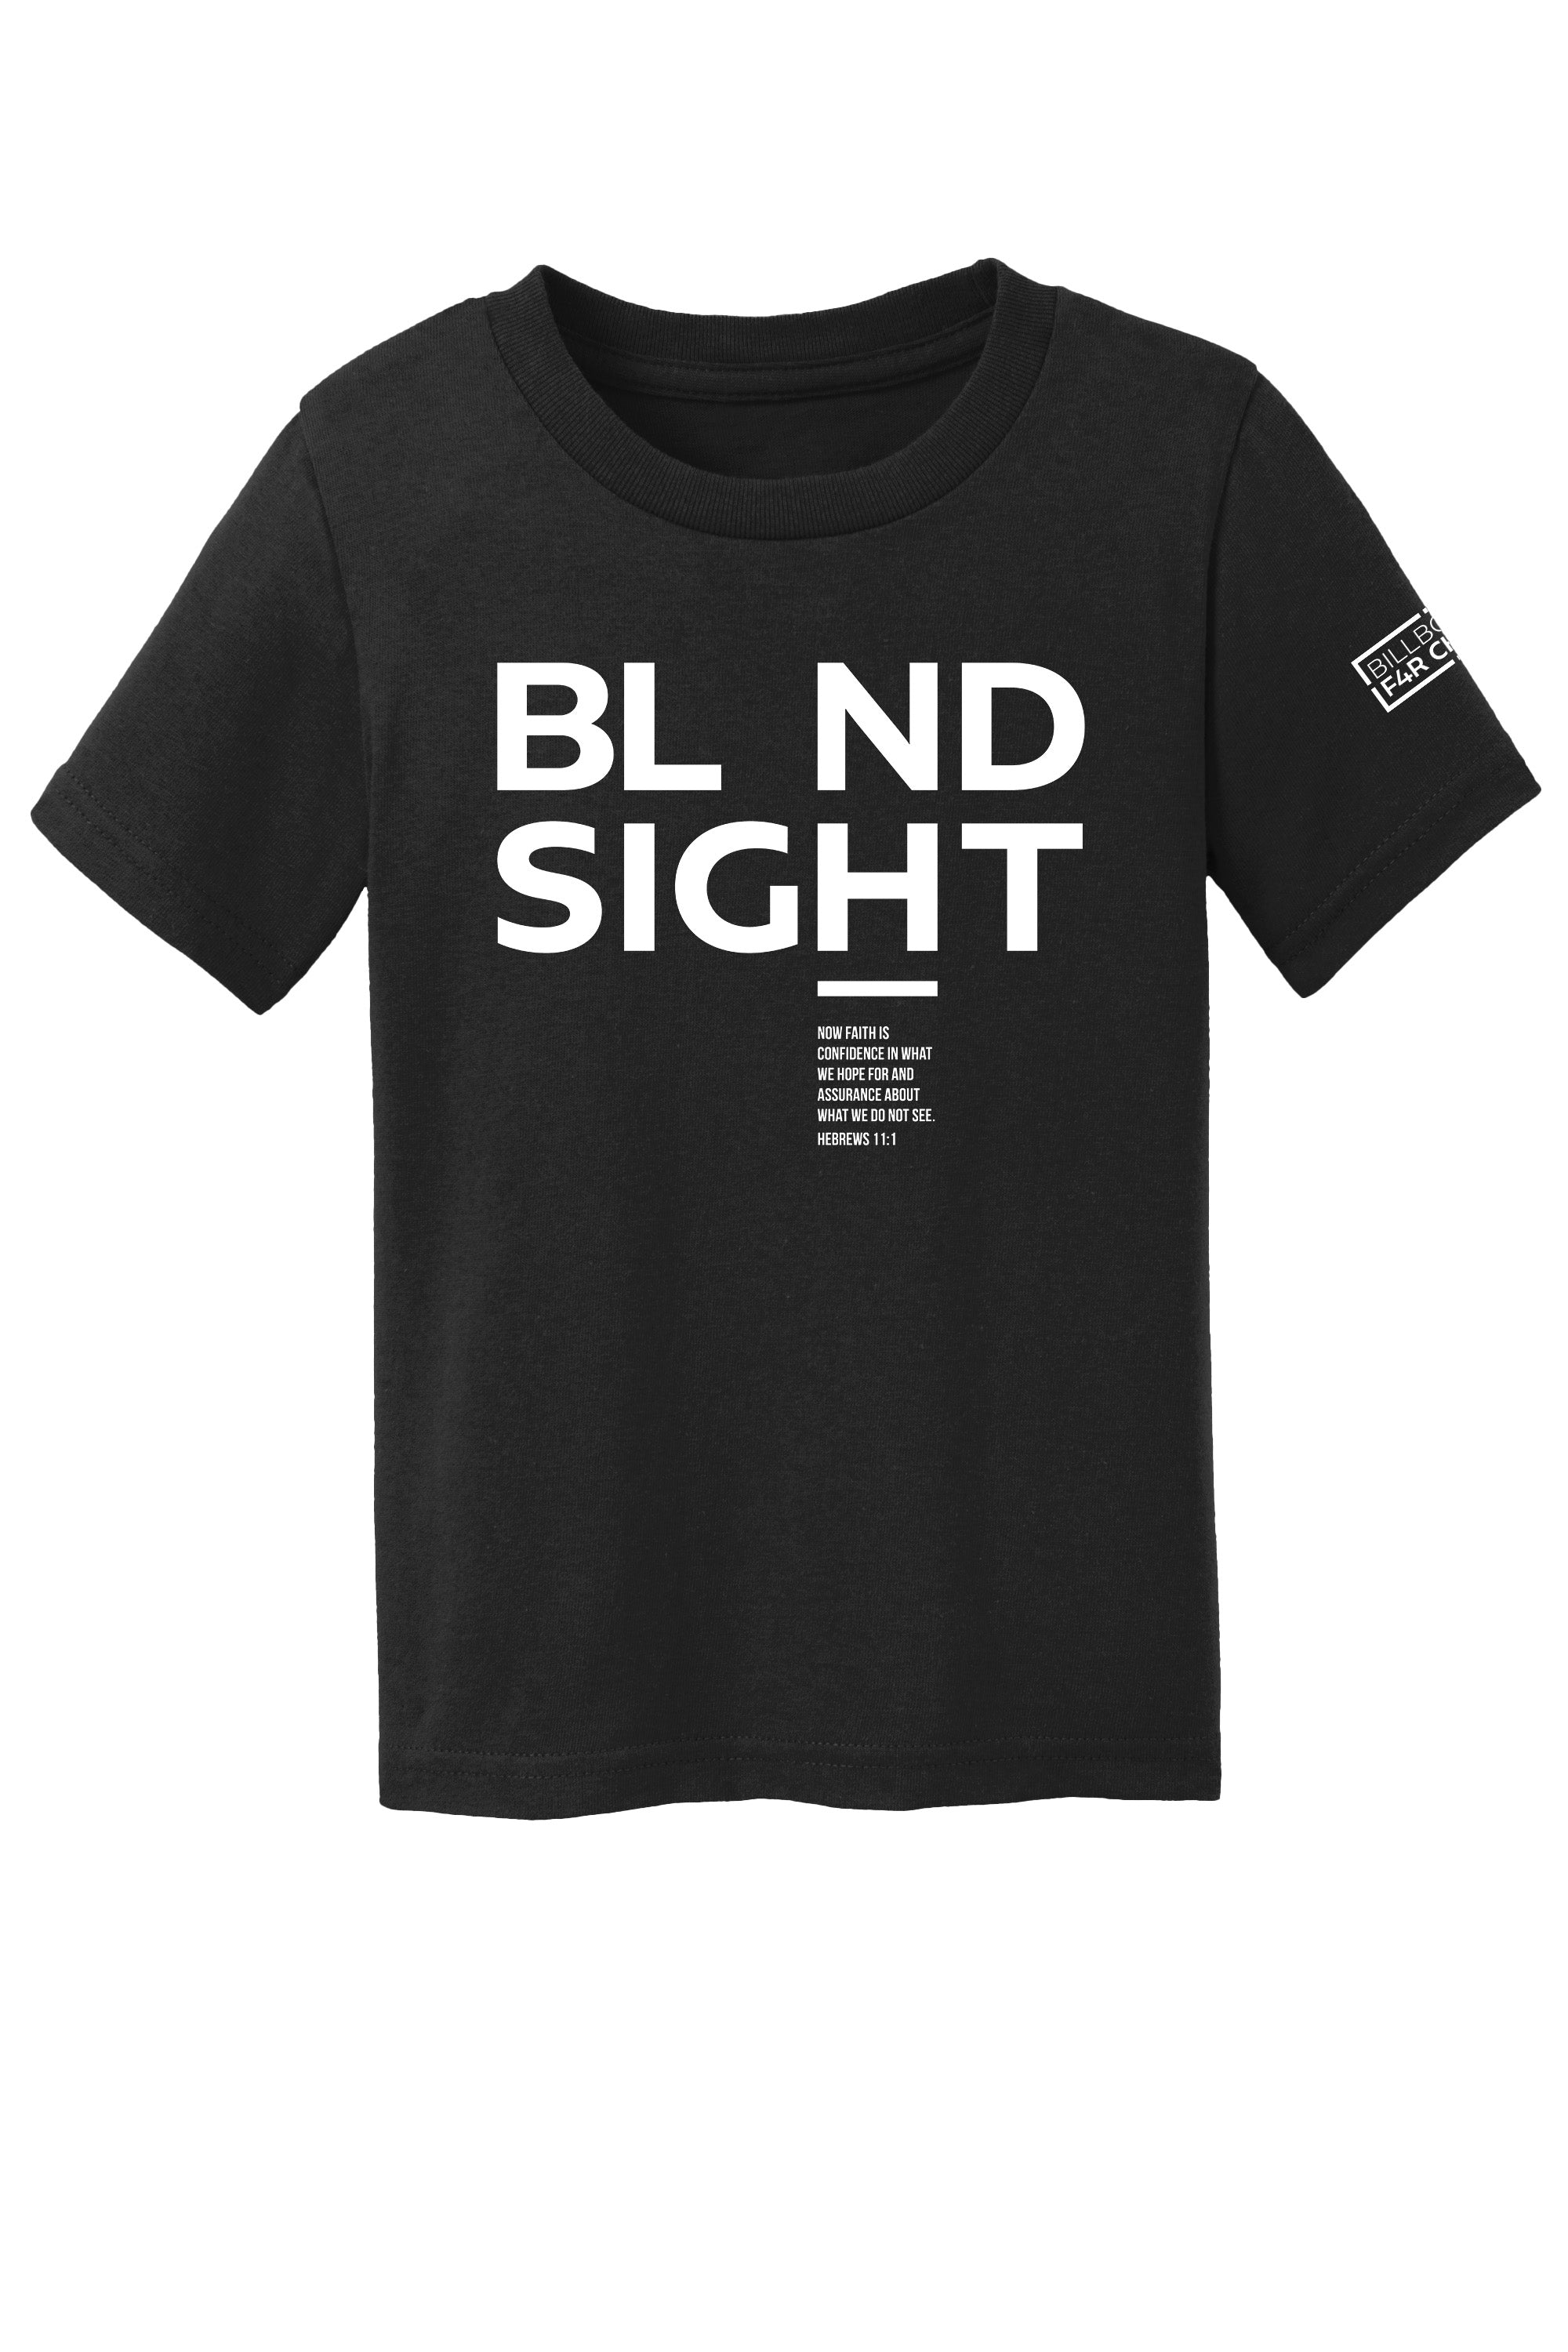 BL ND Sight 2 Toddler T-Shirt